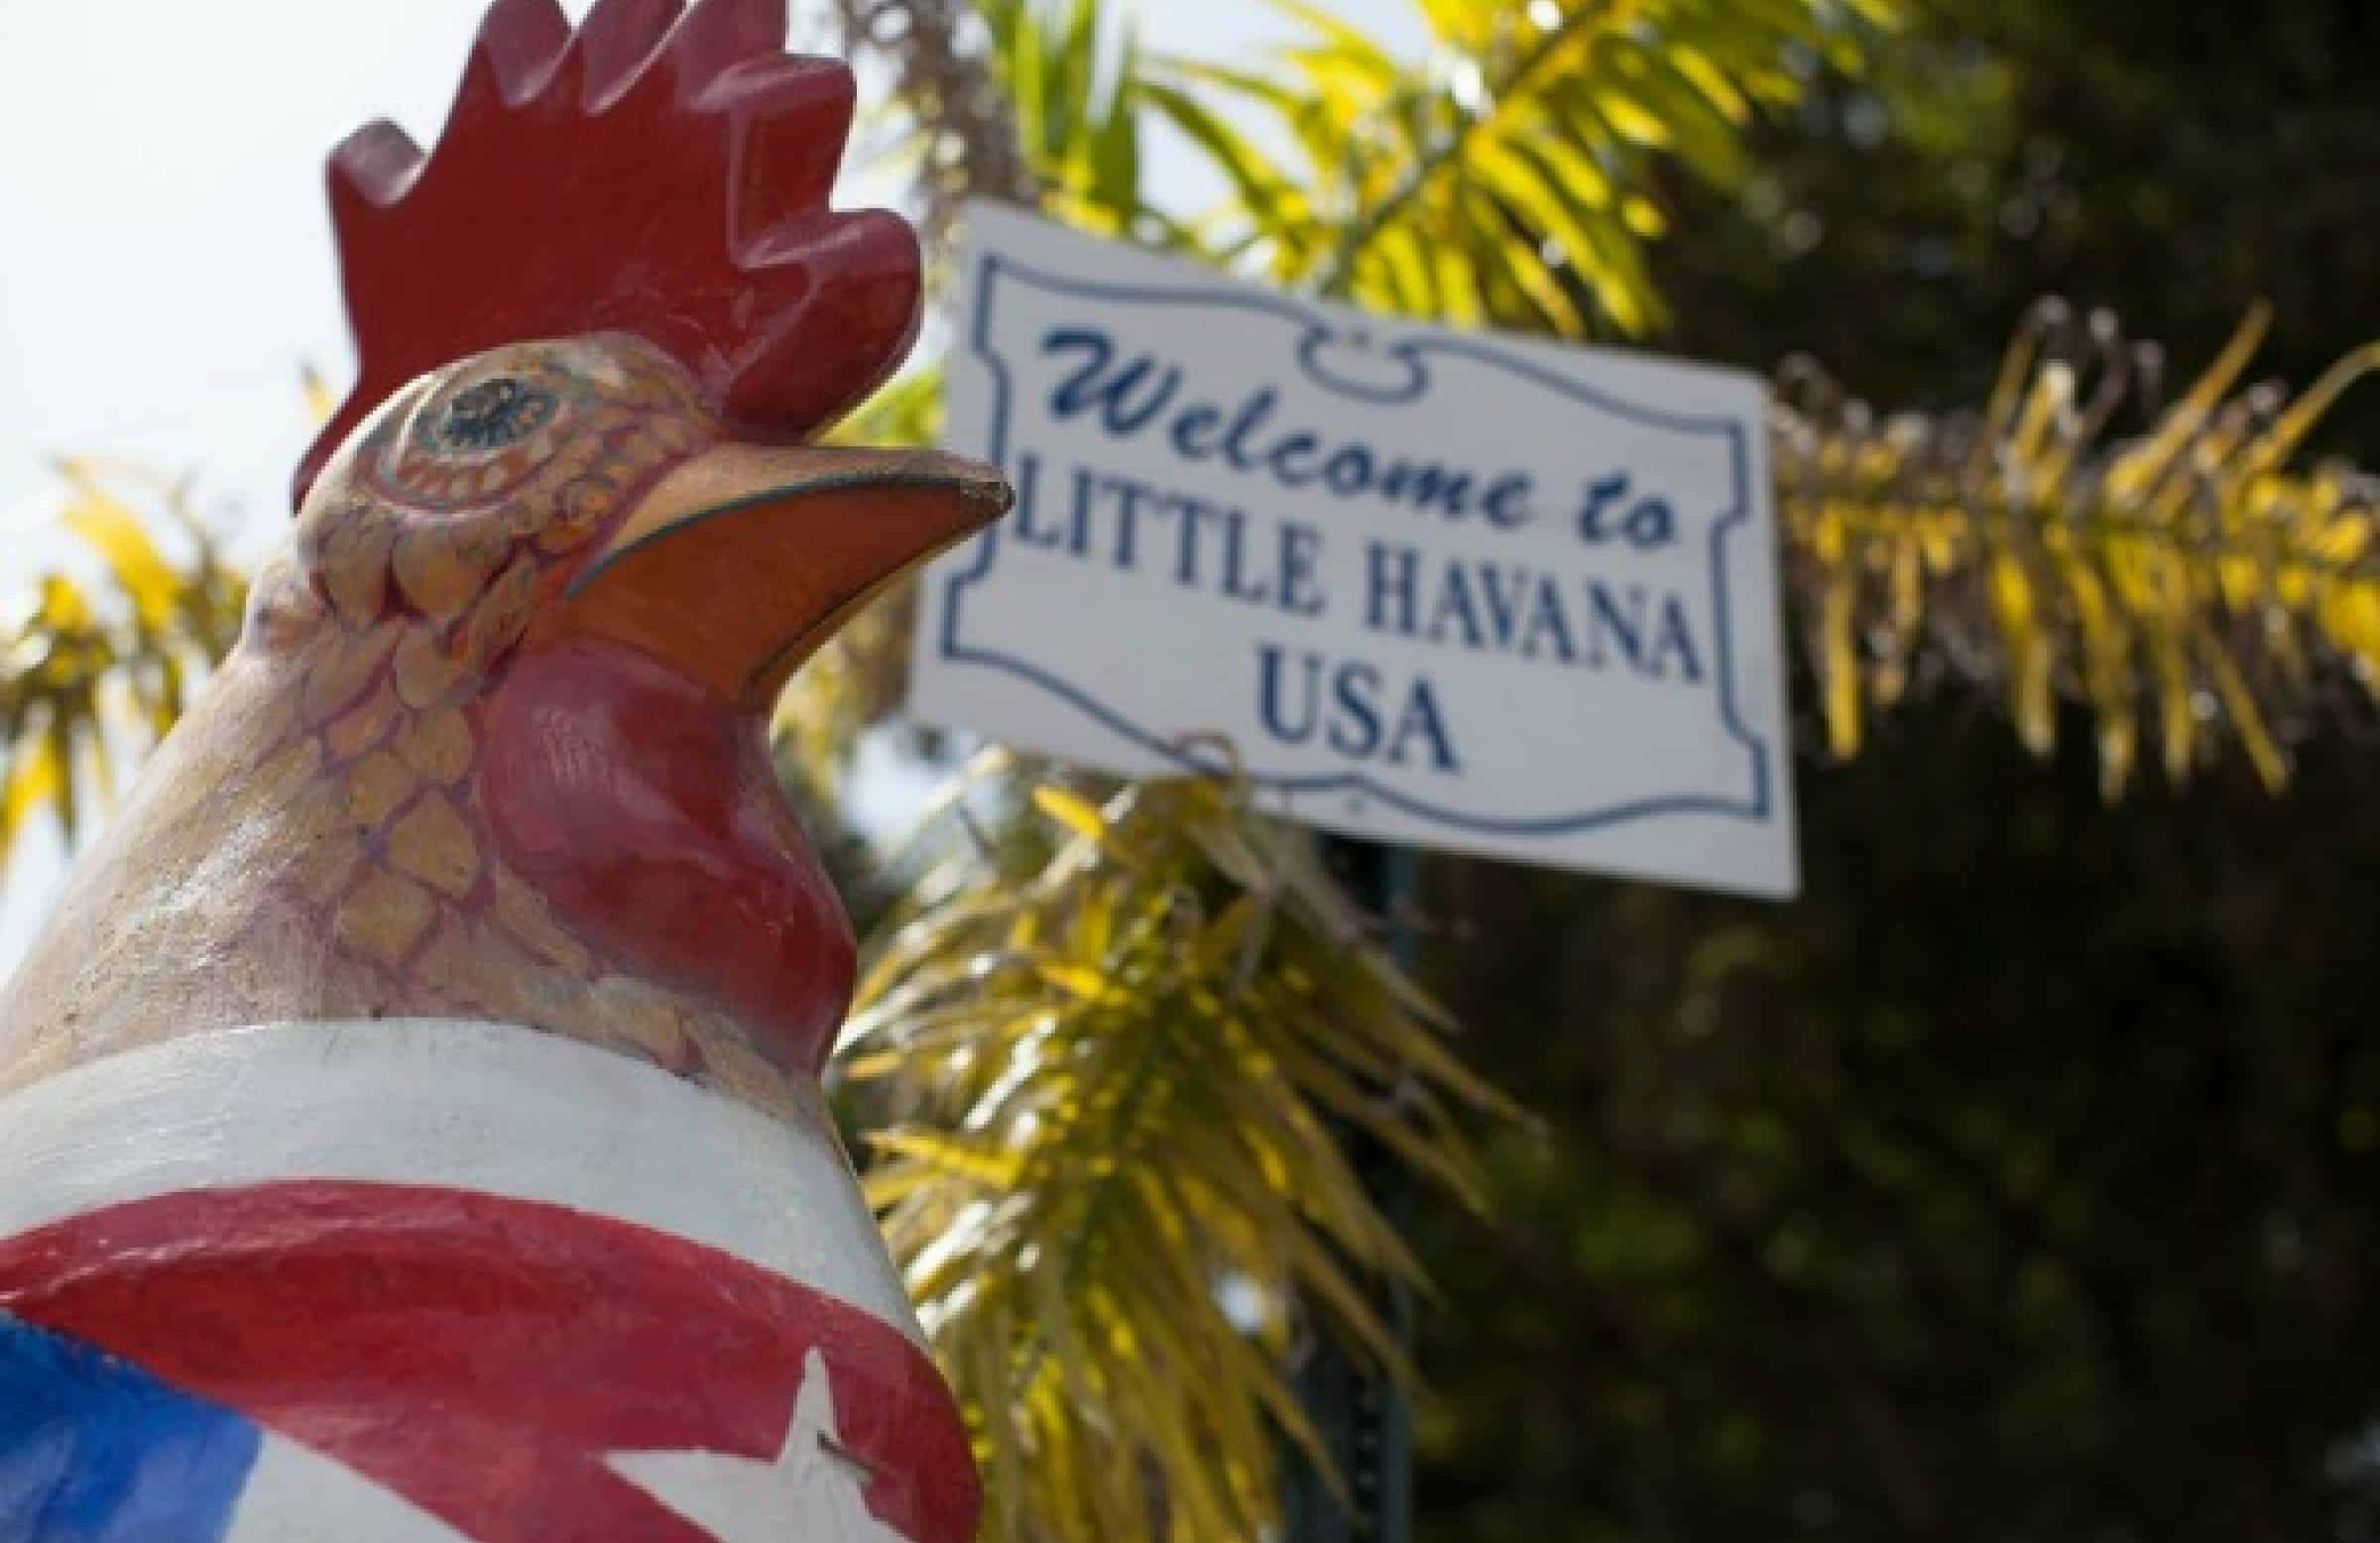 Secret Walking Tours: Little Havana Walking Tour